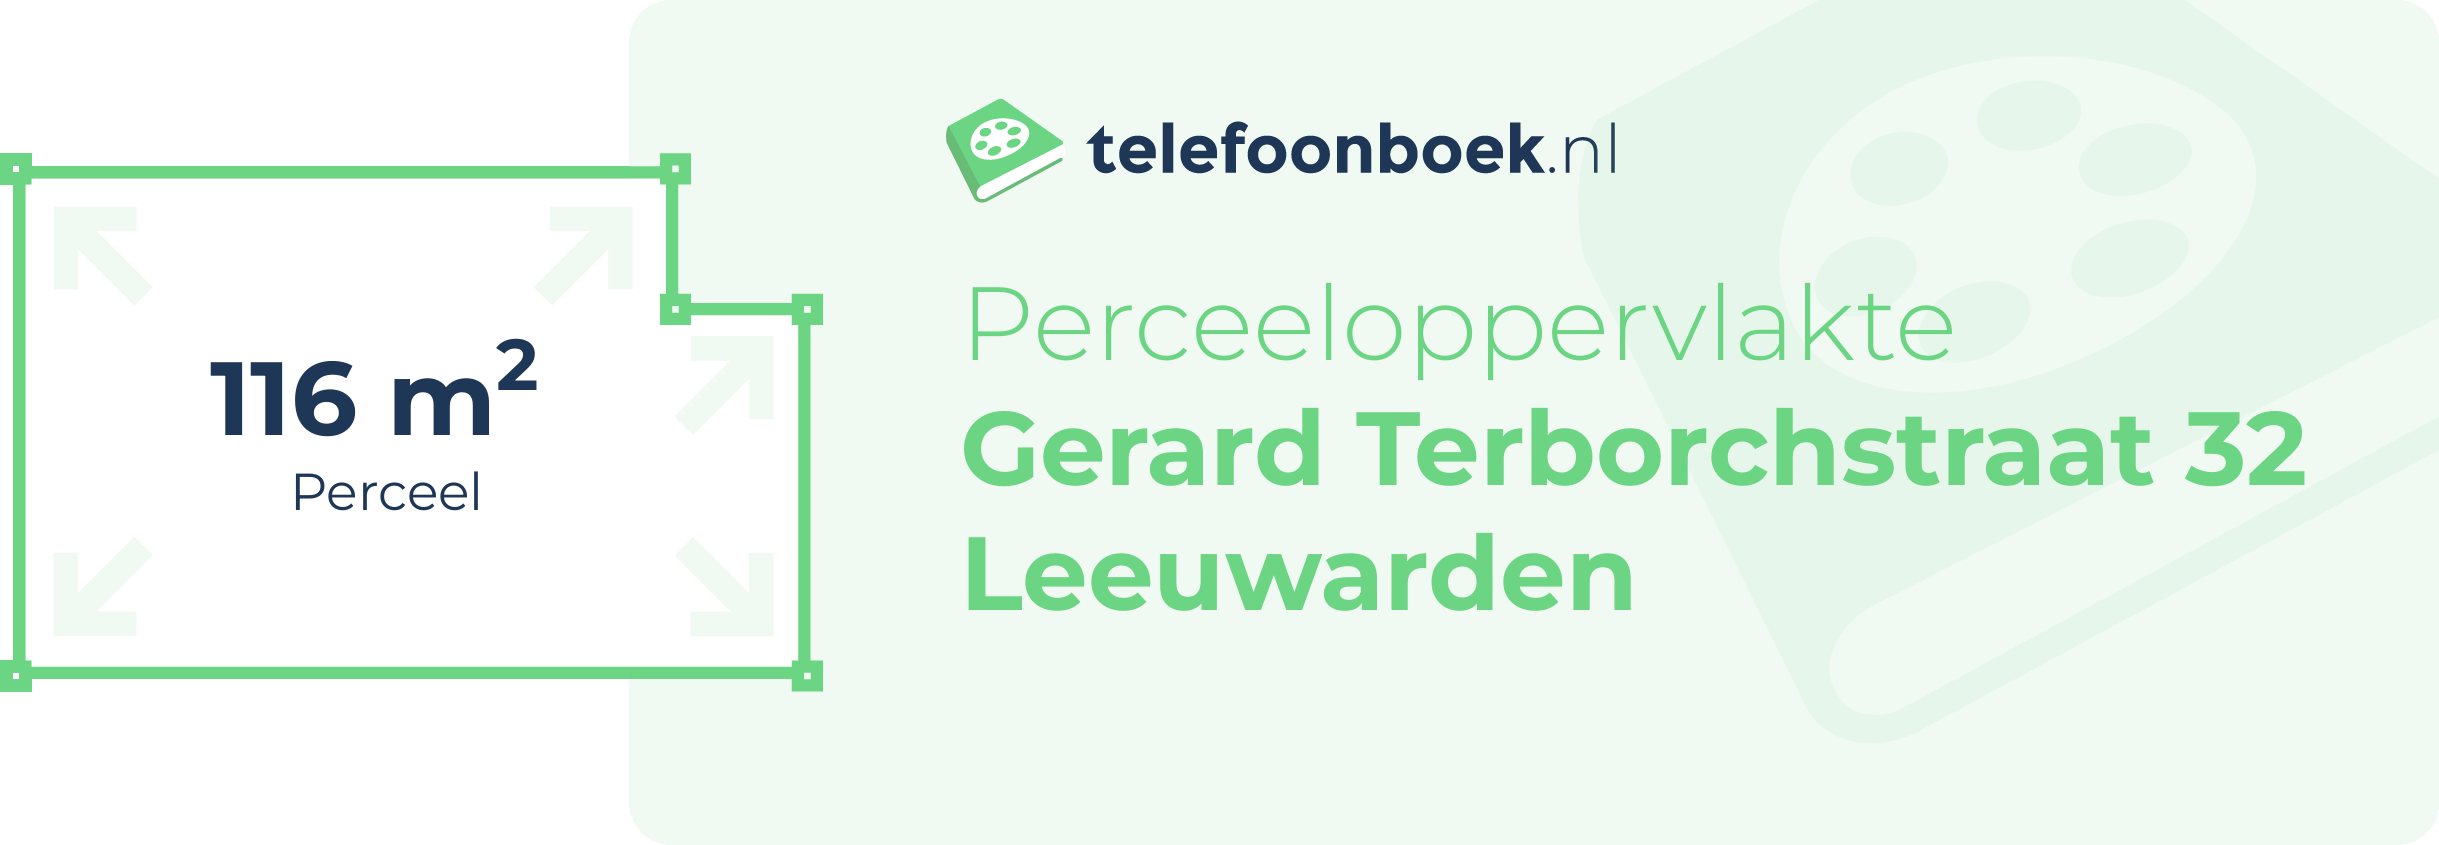 Perceeloppervlakte Gerard Terborchstraat 32 Leeuwarden